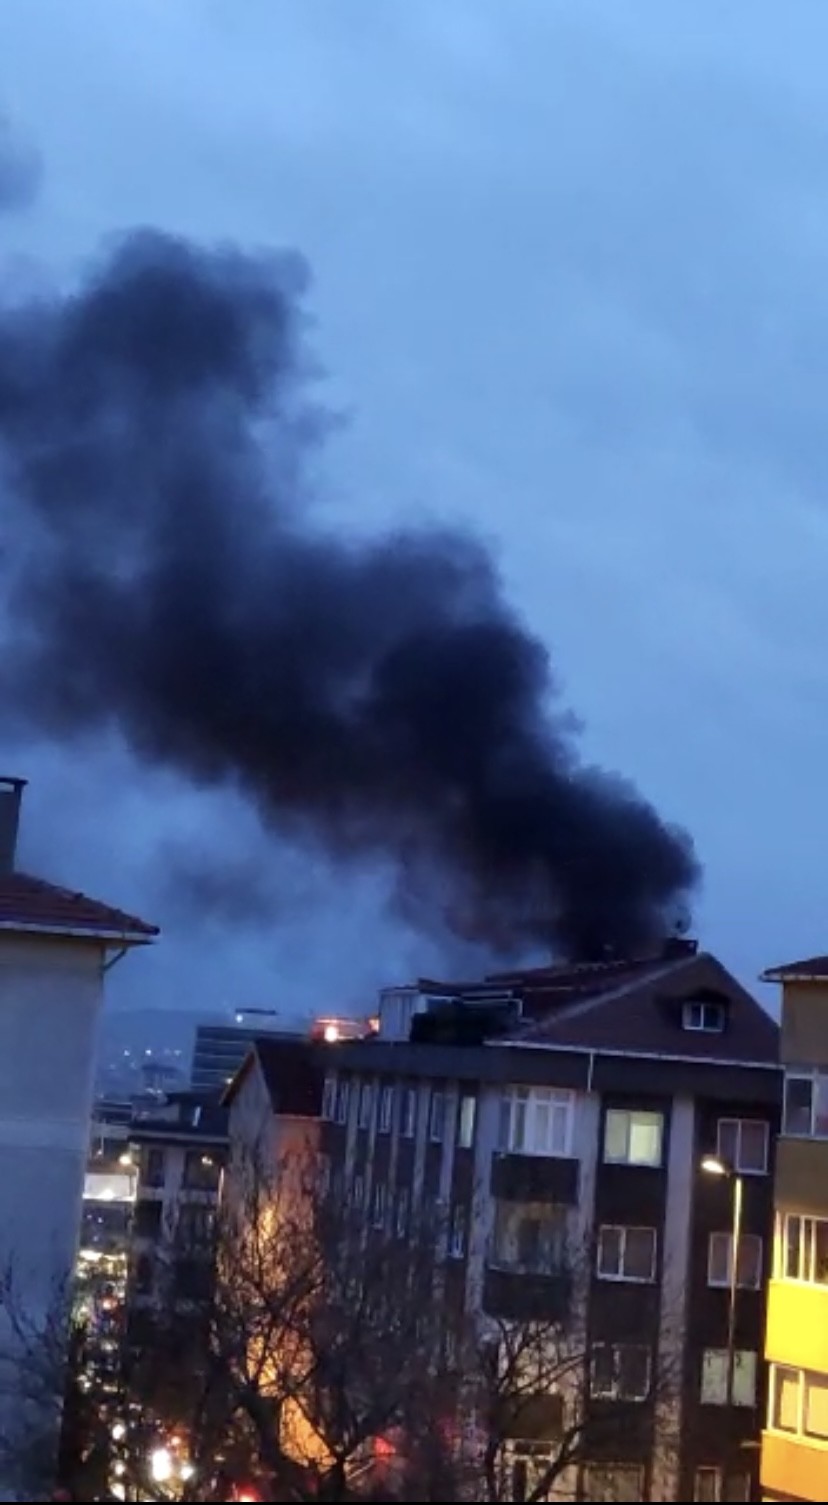 İstanbul Üsküdar’da, 5 katlı binanın çatısında çıkan yangın paniğe yol açtı. Kısa sürede yan binaya da sıçrayan yangın, diğer ilçelerden gelen ...